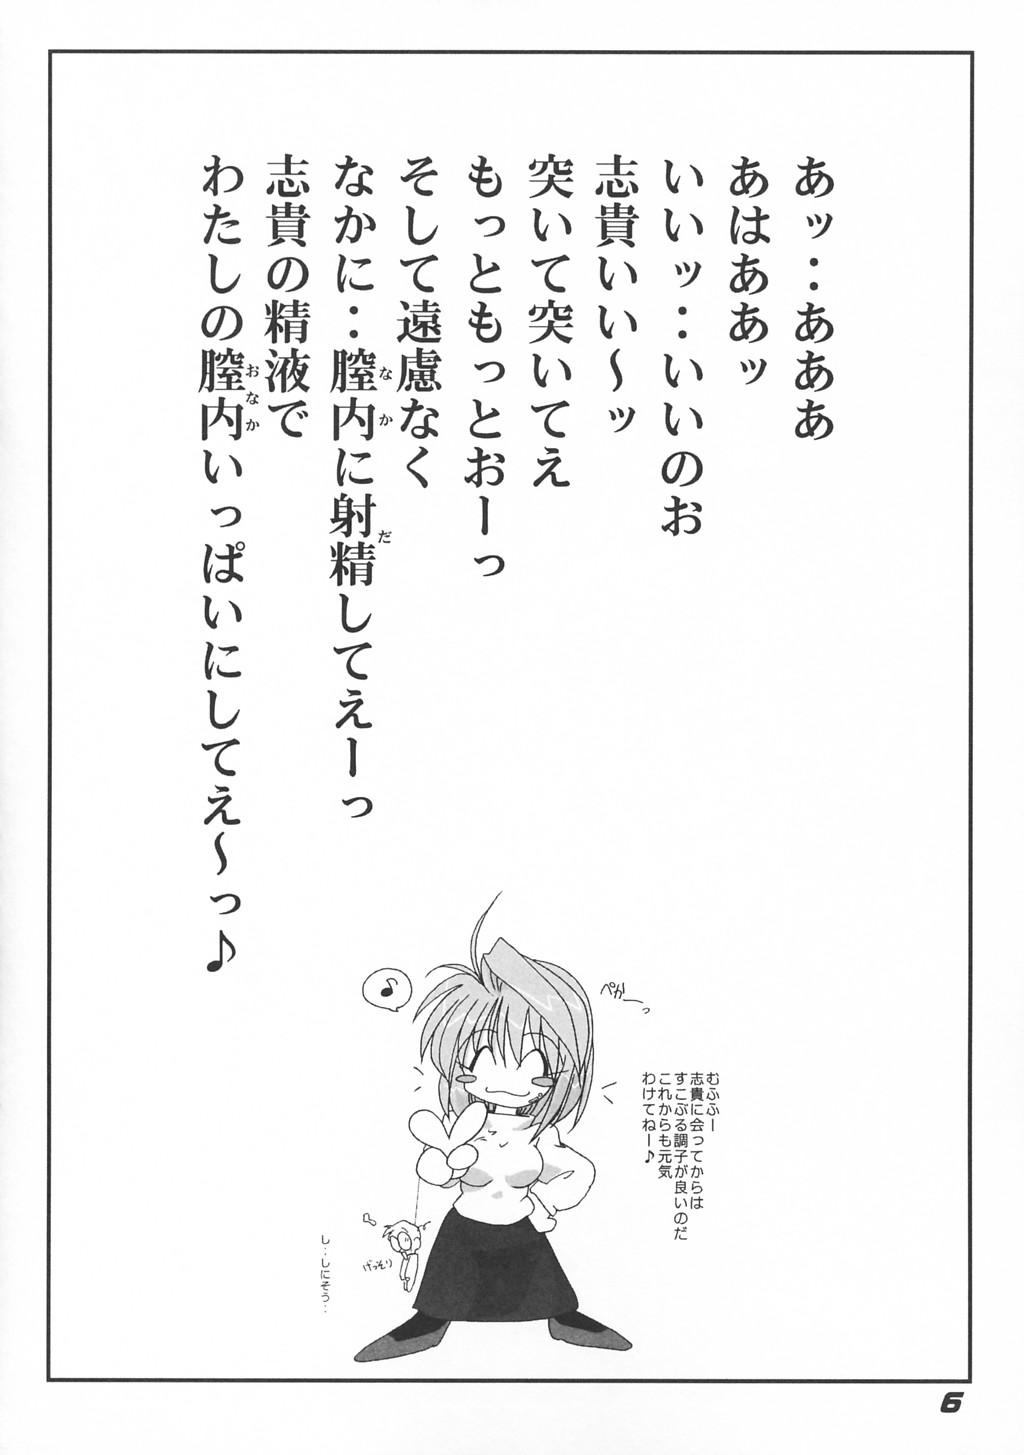 Amazing [Kieiza cmp] N+ [N-Plus] #7 (Tsukihime) - Tsukihime Cocksucking - Page 7